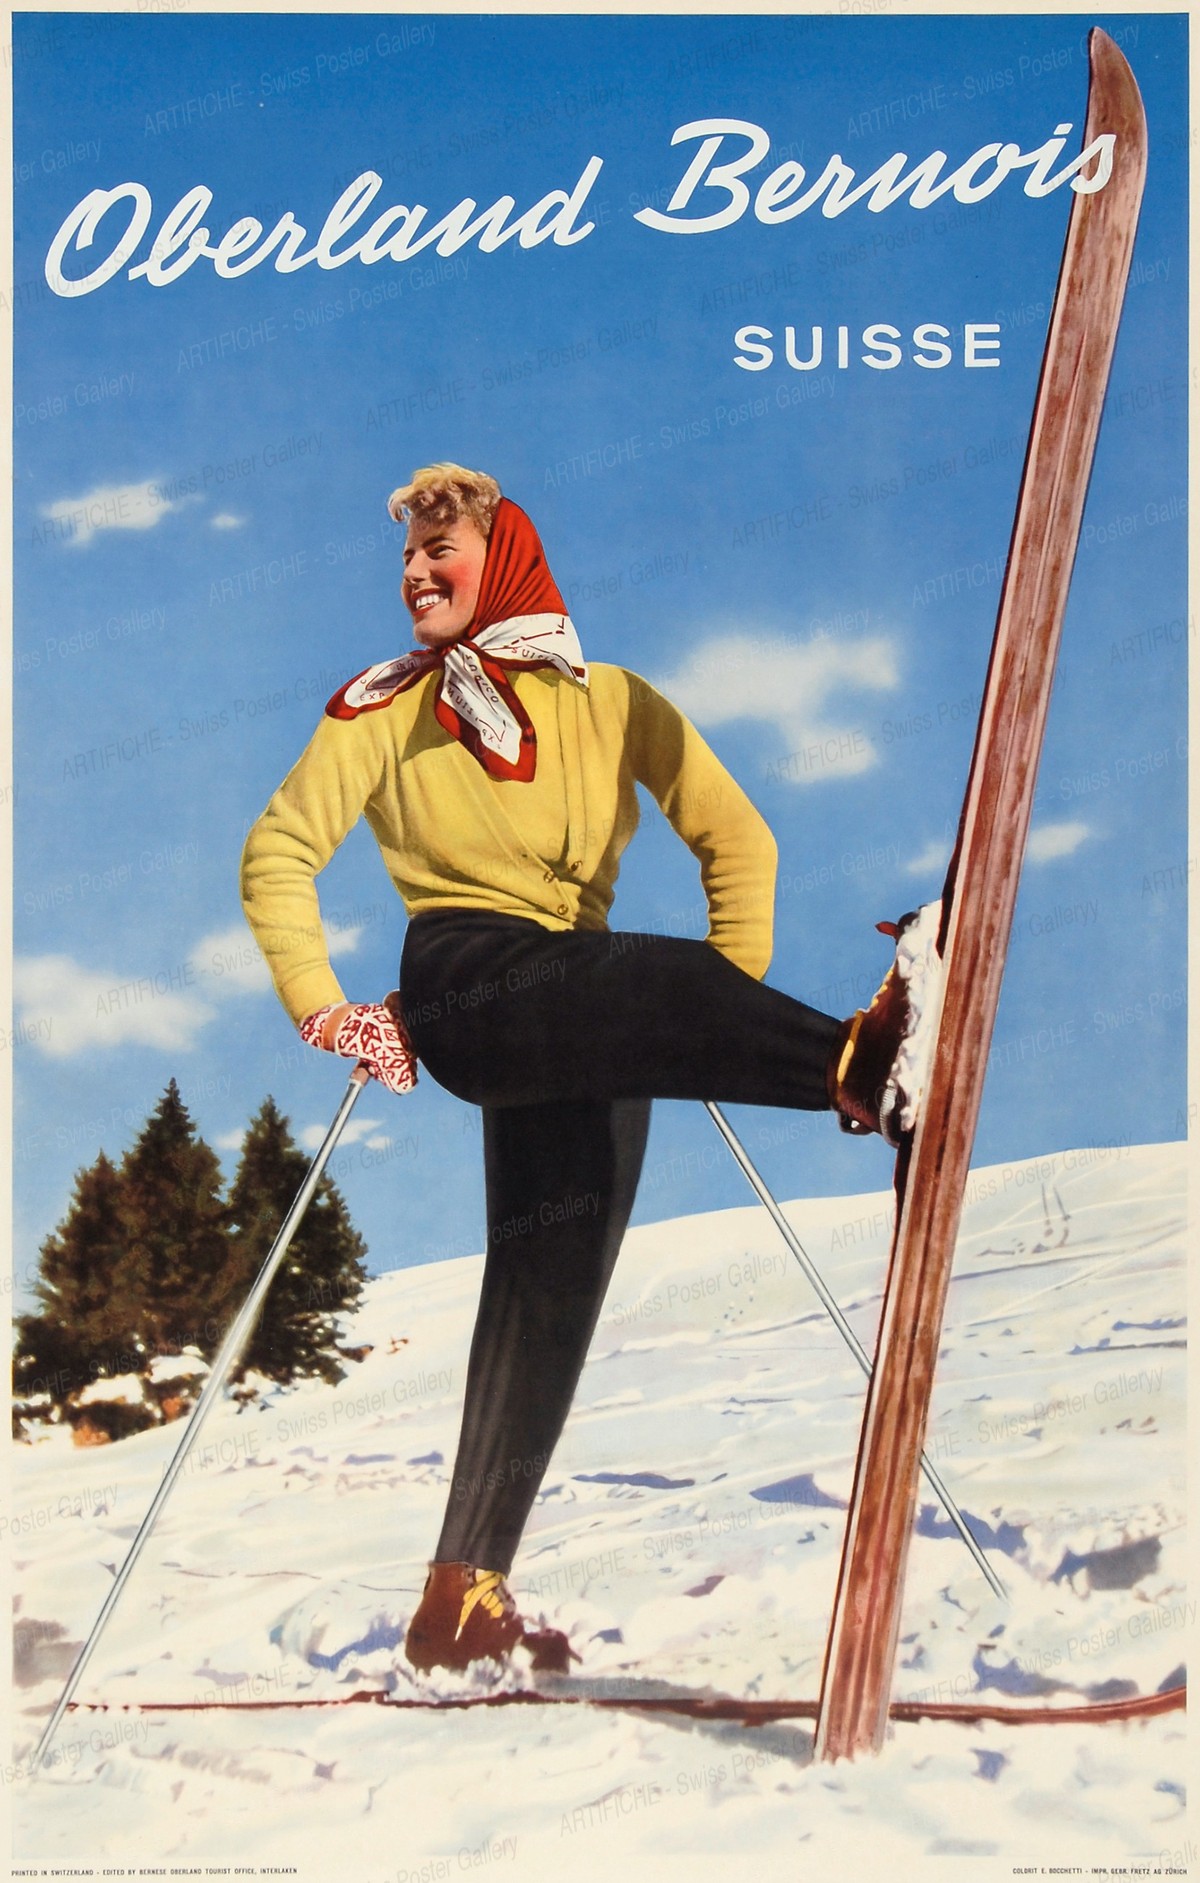 Oberland Bernois – Suisse, Ernst Bocchetti